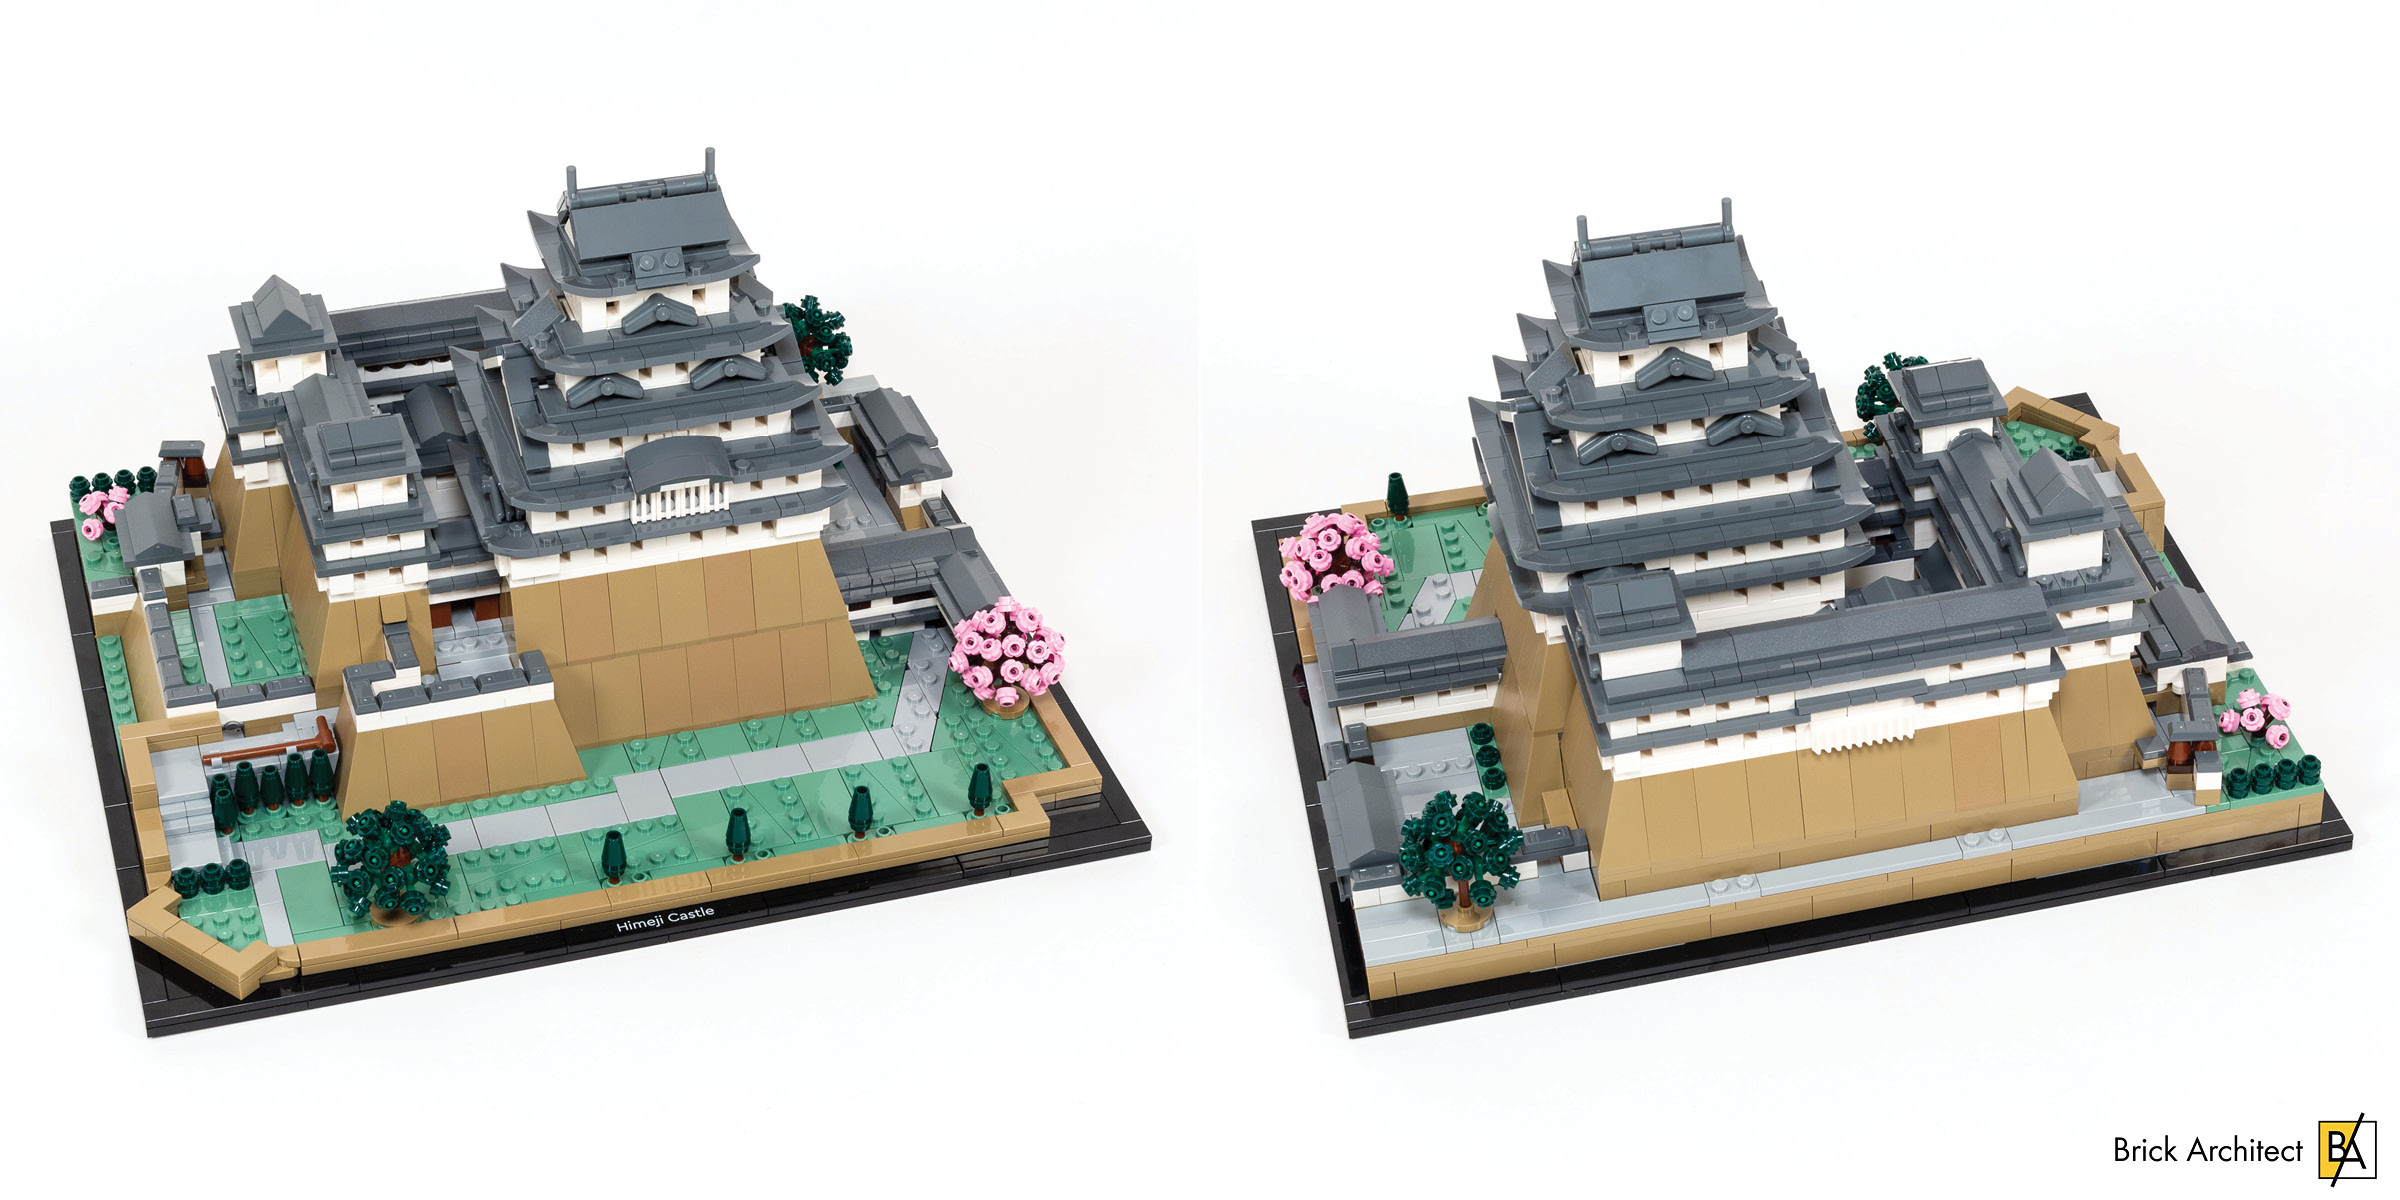 LEGO 21060 Architecture Le Château d'Himeji, Kit de Construction